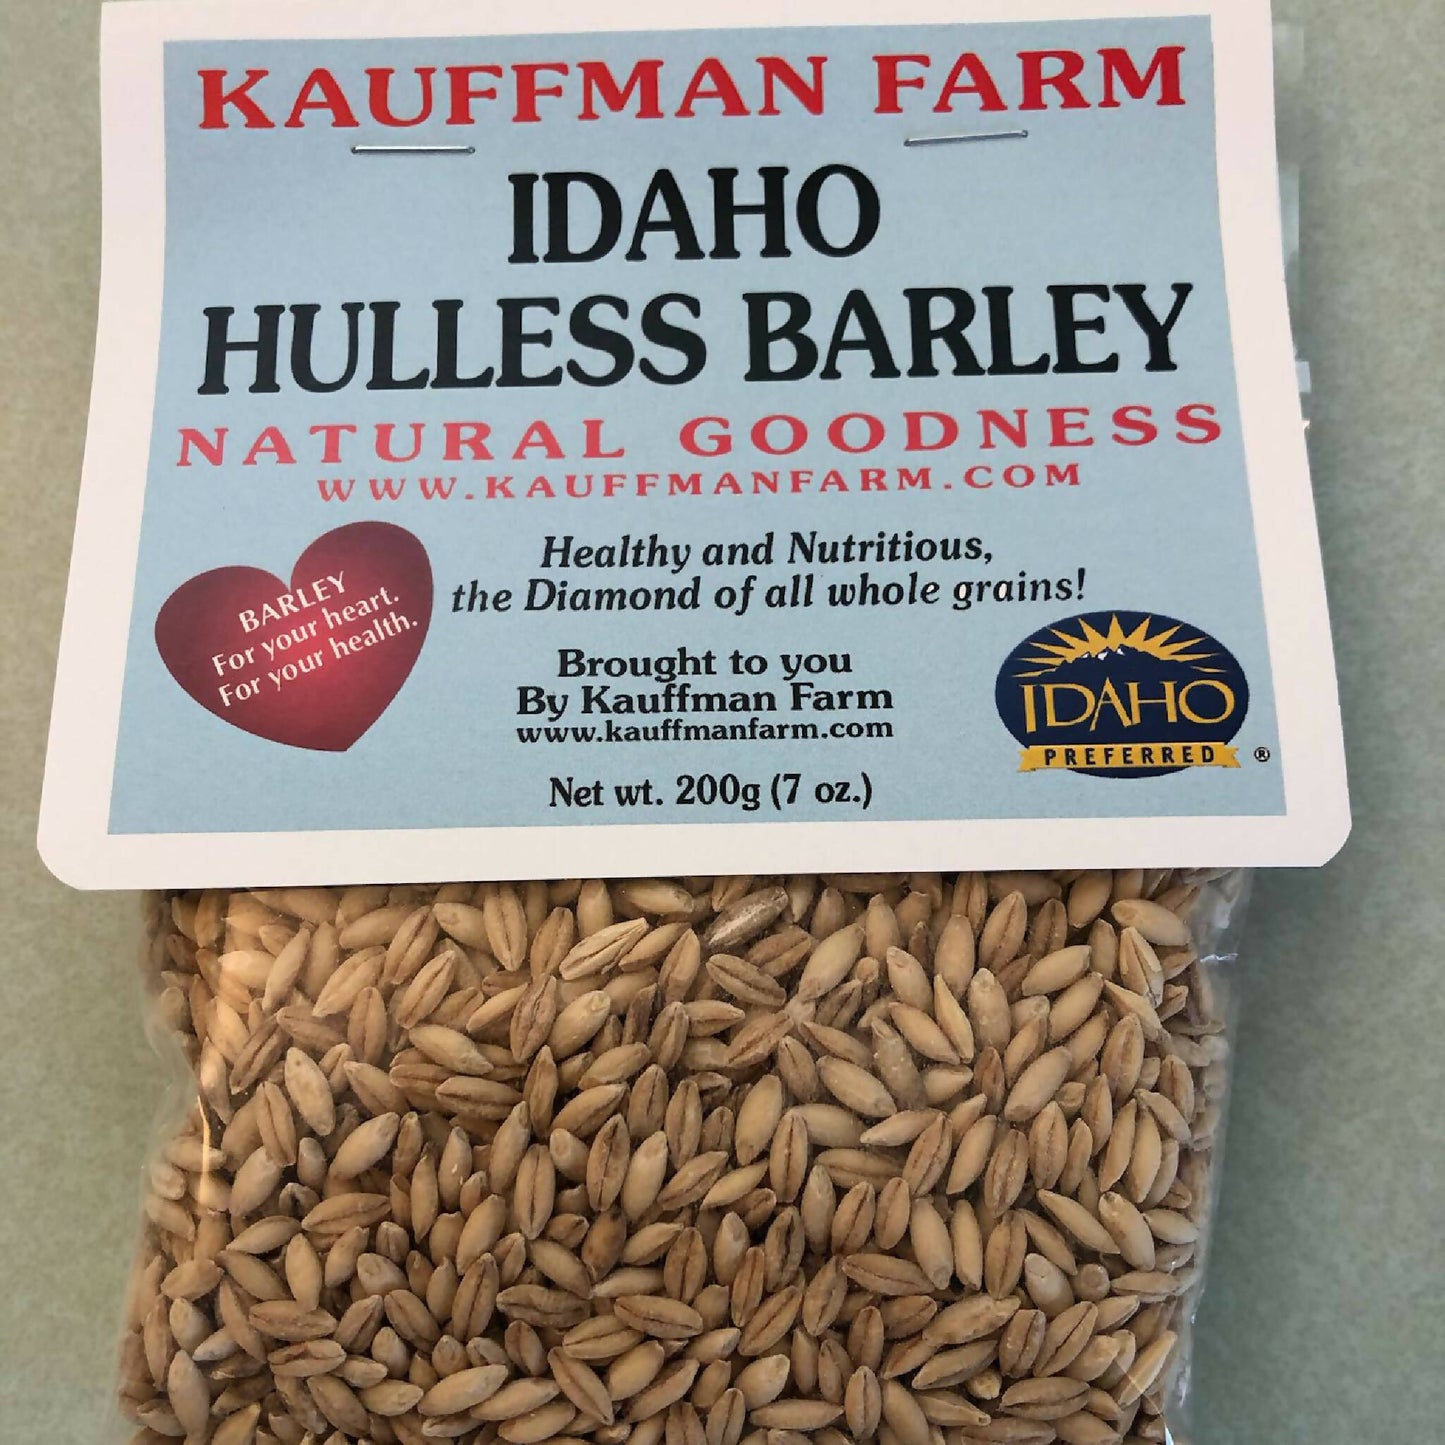 Idaho Hulless Barley